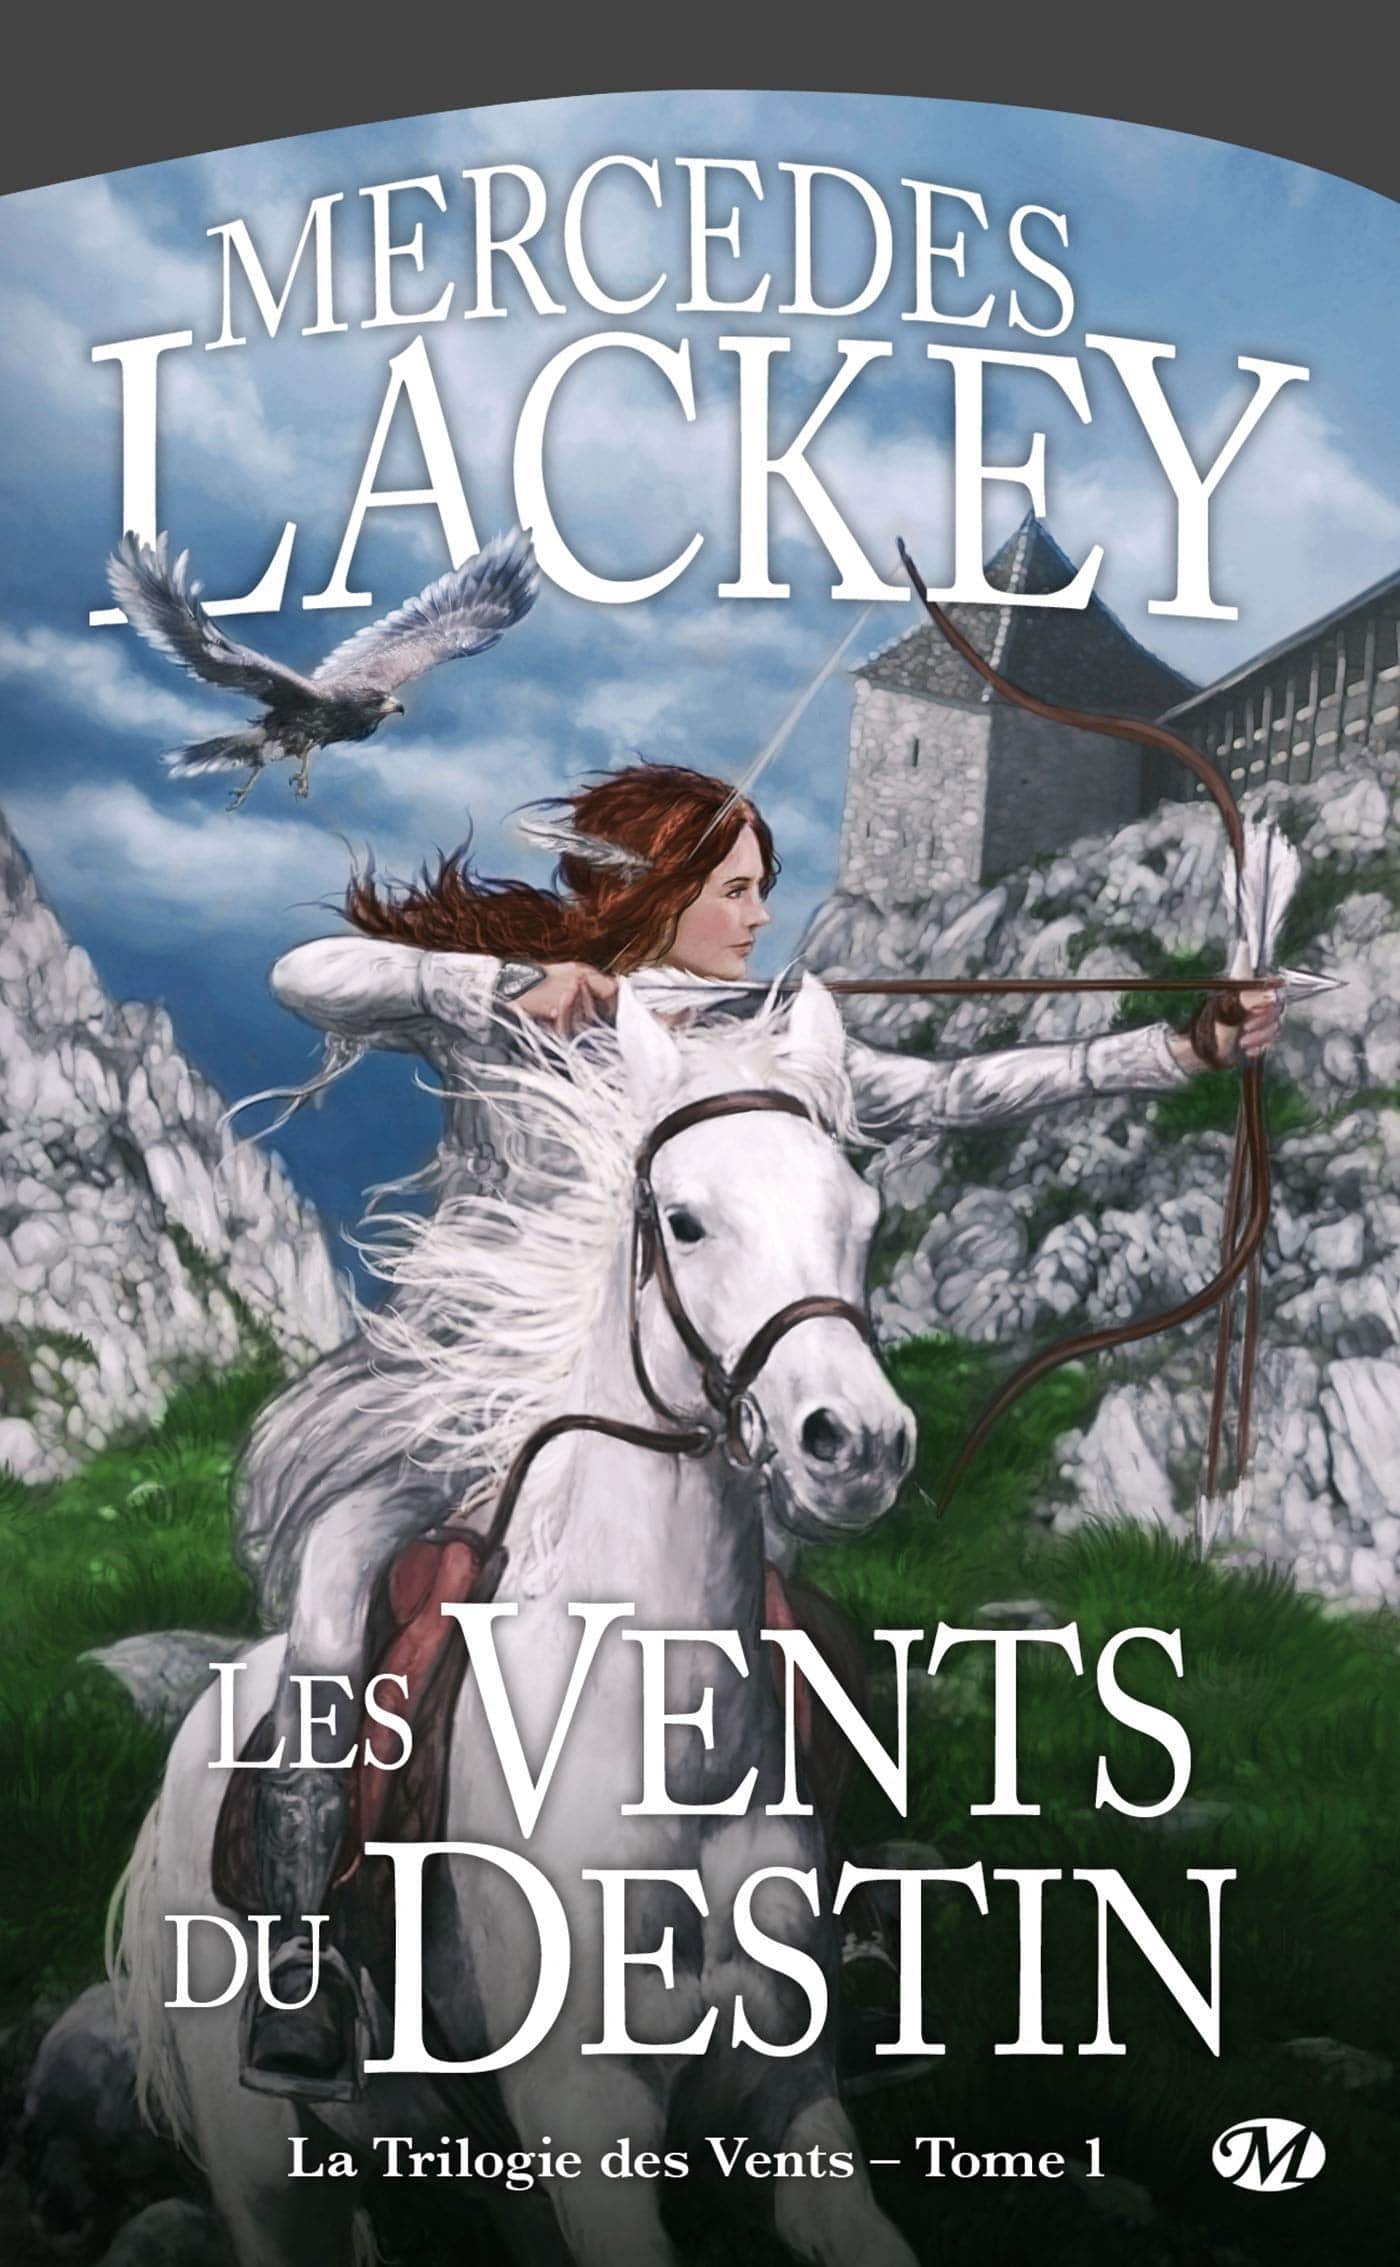 La trilogie des vents, Mercedes Lackey